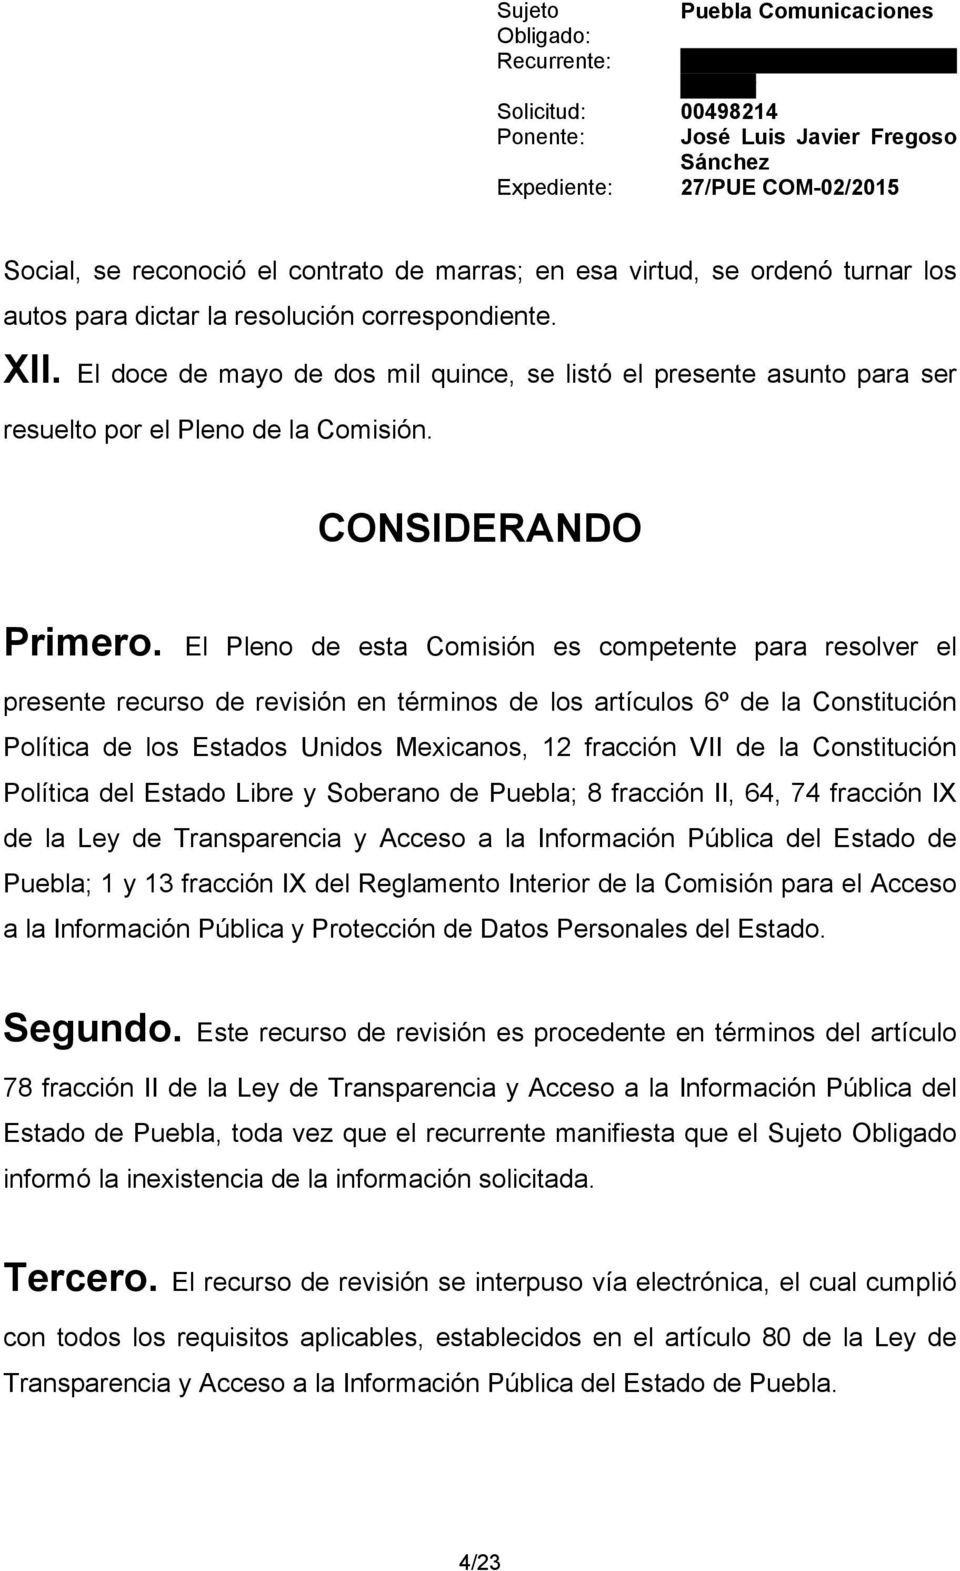 El Pleno de esta Comisión es competente para resolver el presente recurso de revisión en términos de los artículos 6º de la Constitución Política de los Estados Unidos Mexicanos, 12 fracción VII de